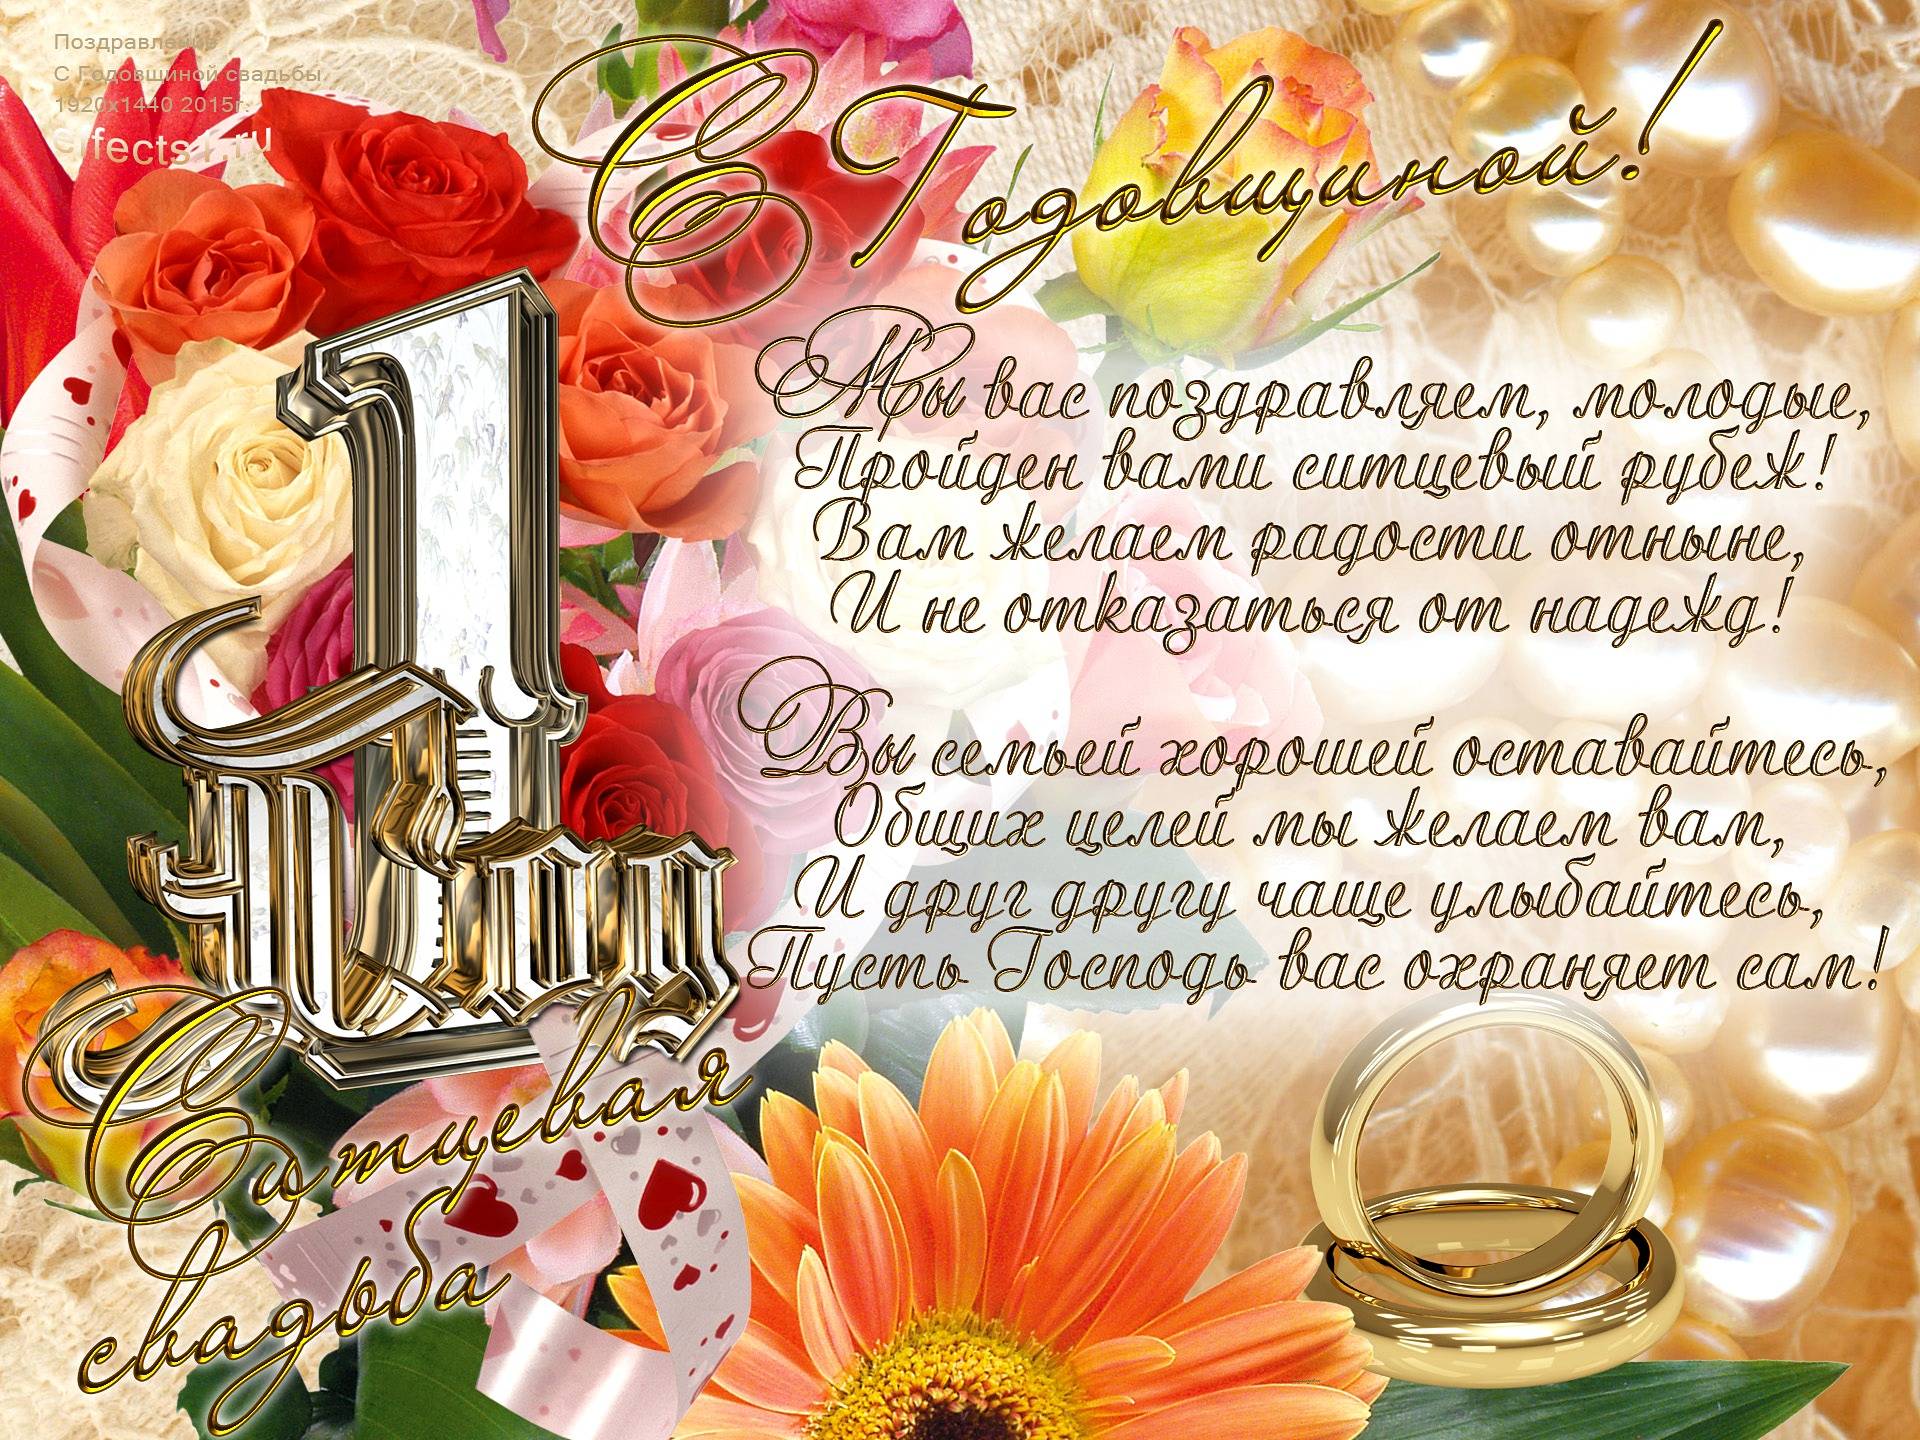 ᐉ с годовщиной свадьбы 1 год мужу. поздравления на ситцевую свадьбу (1 год) стих от жены мужчине мужу - 41svadba.ru